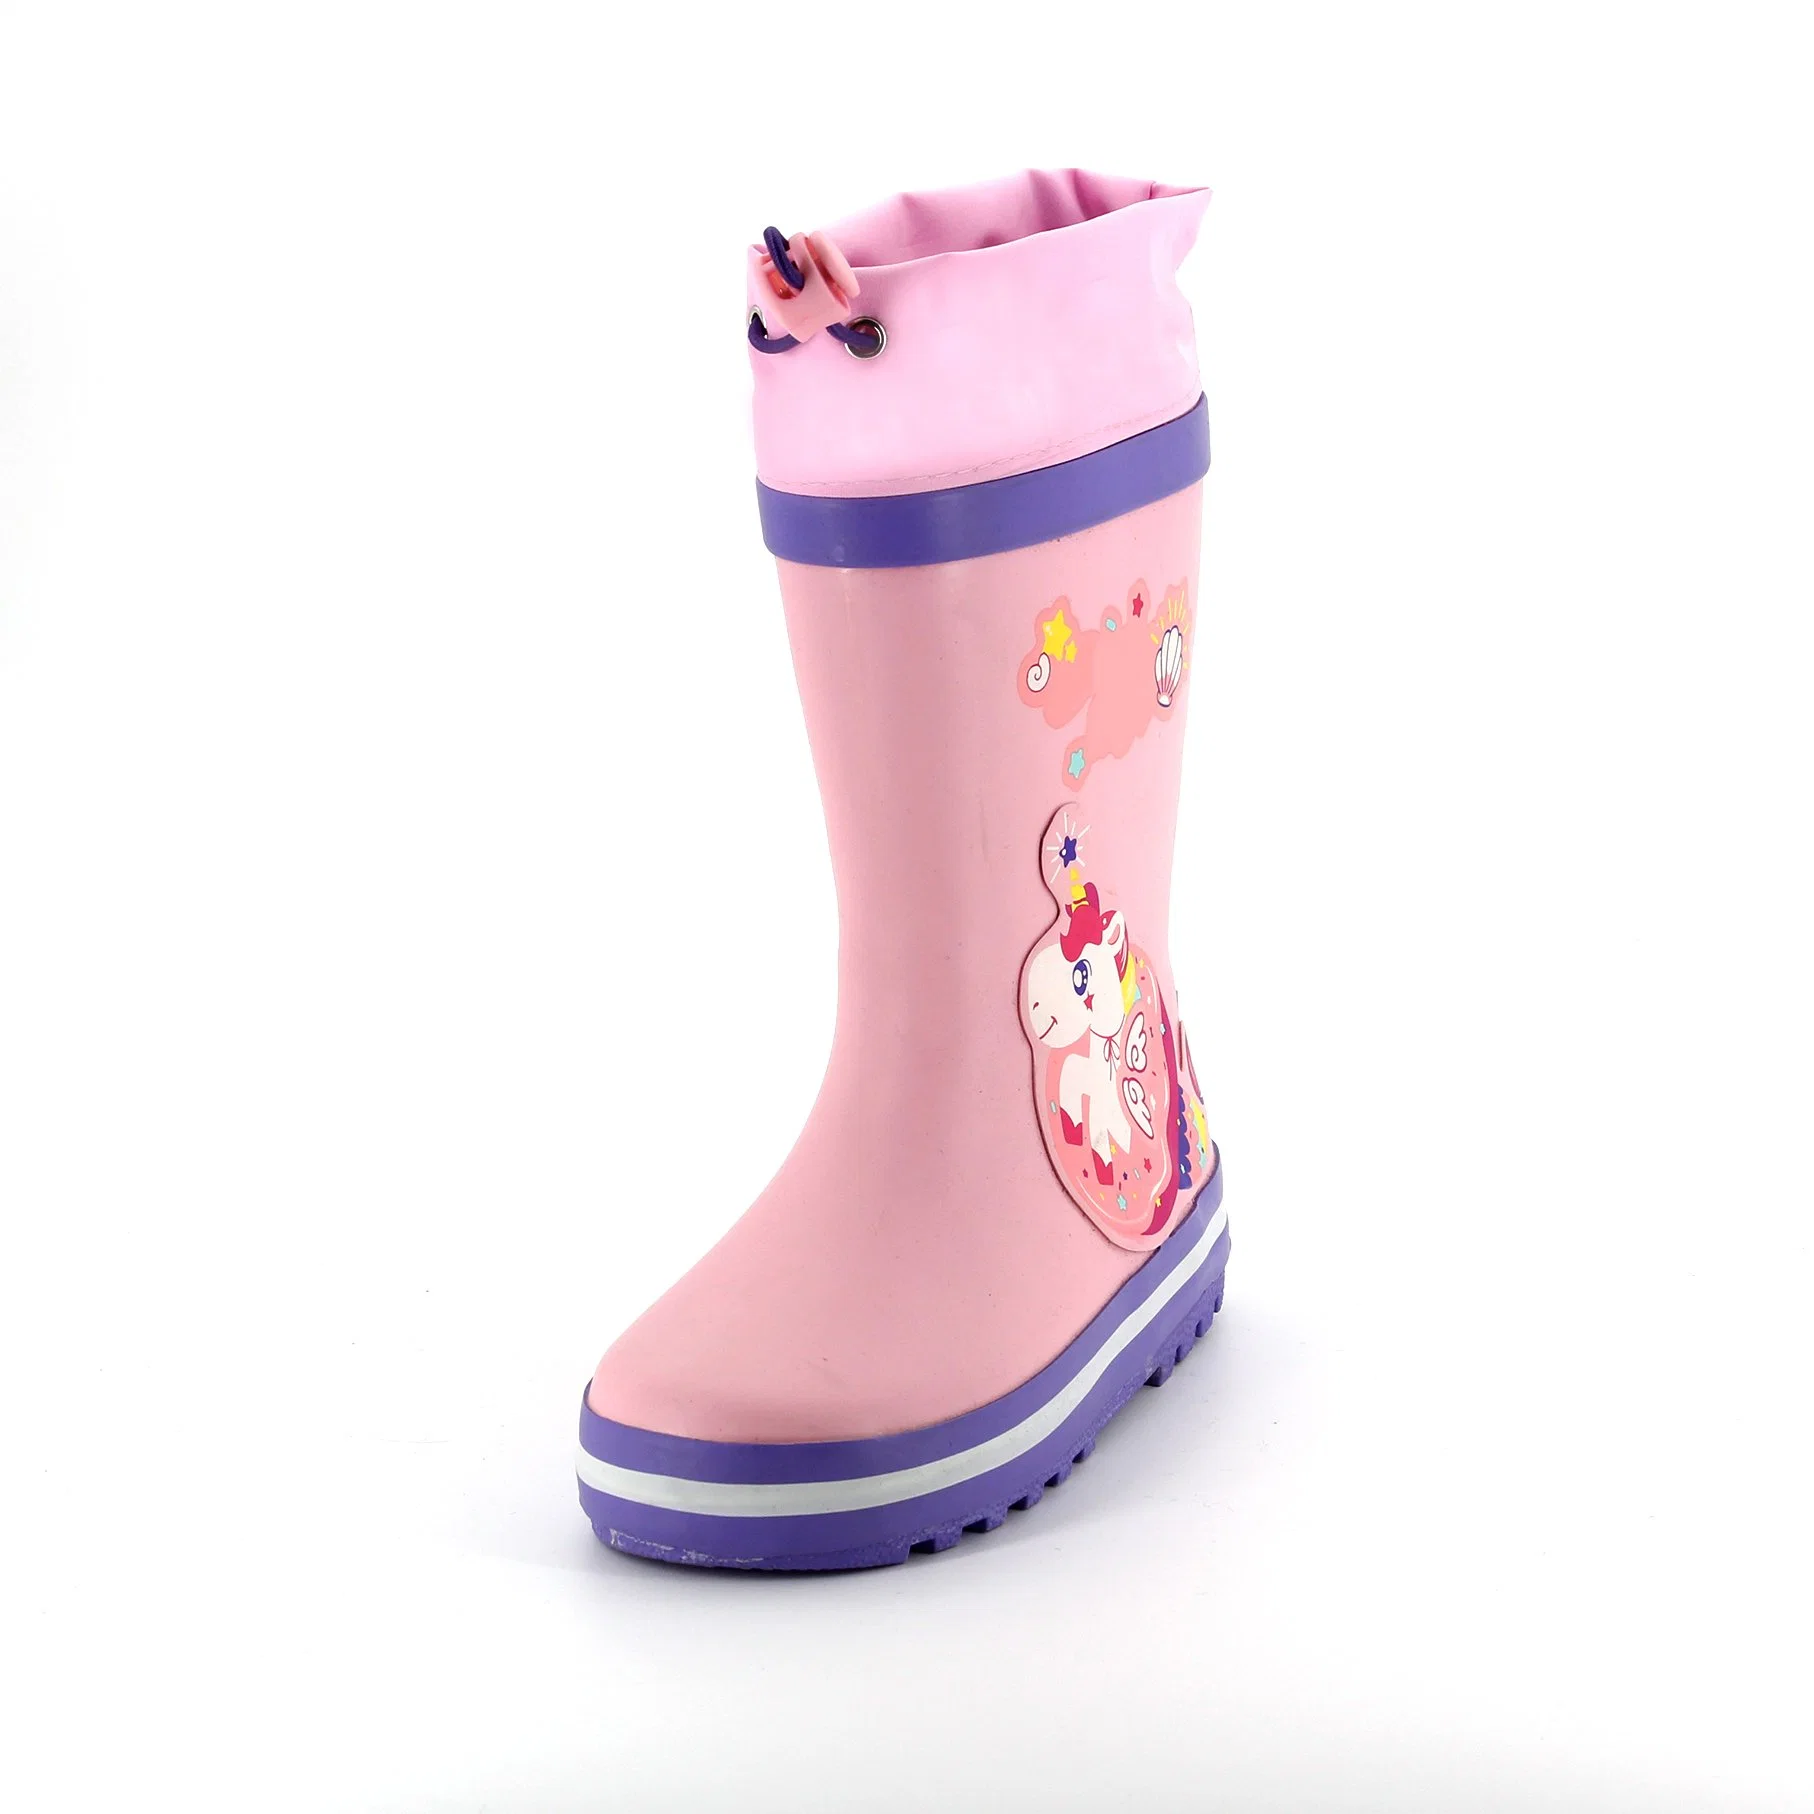 Gummistiefel Outdoor Wasserdicht Kinder Regen Stiefel Gedruckt Strapazierfähig Schuhe